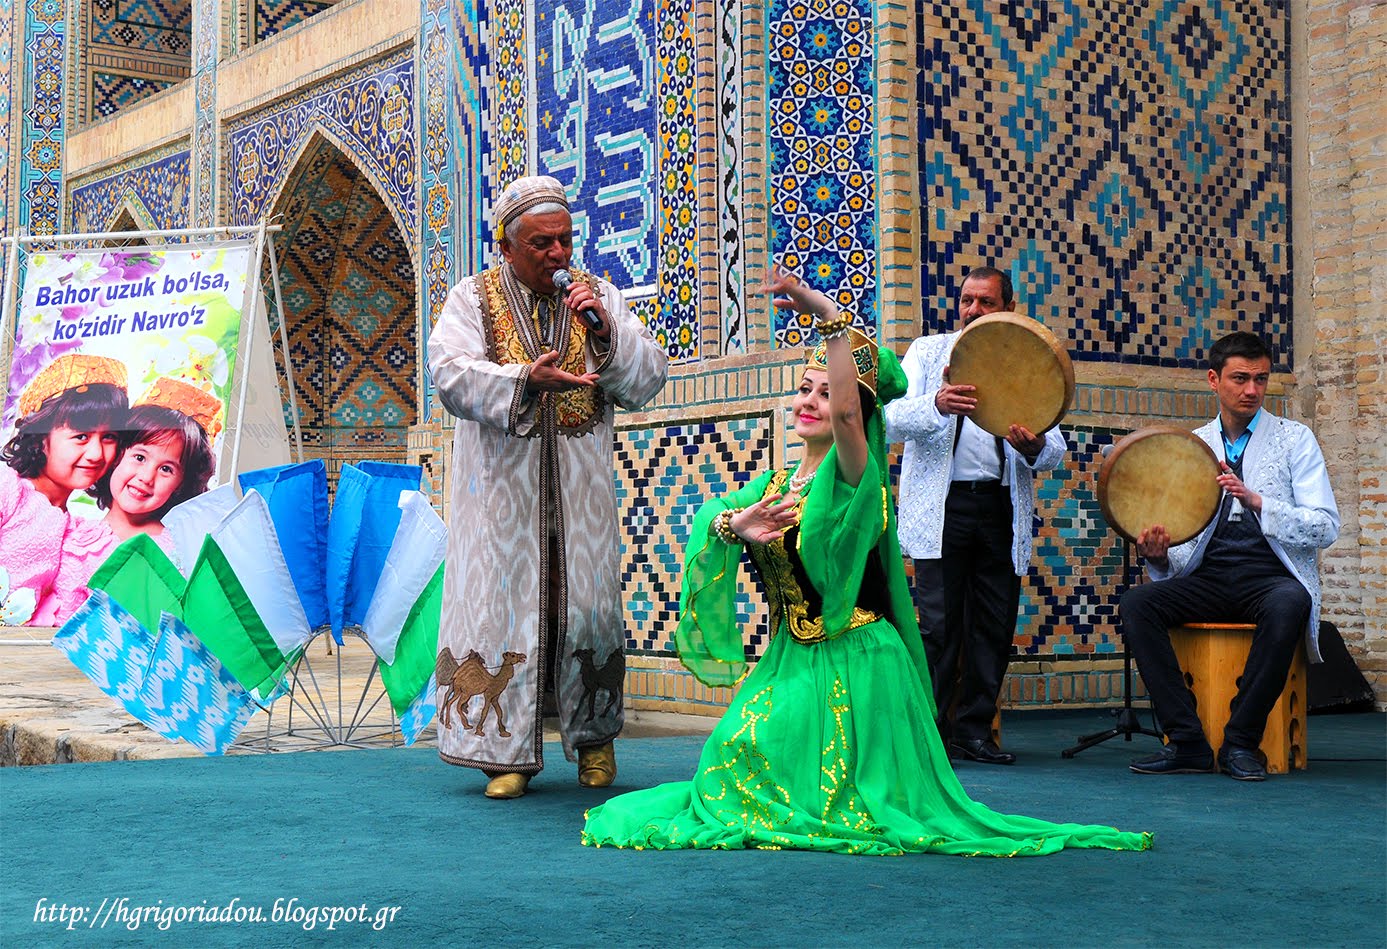 Celebrating the "Navruz" in Bukhara